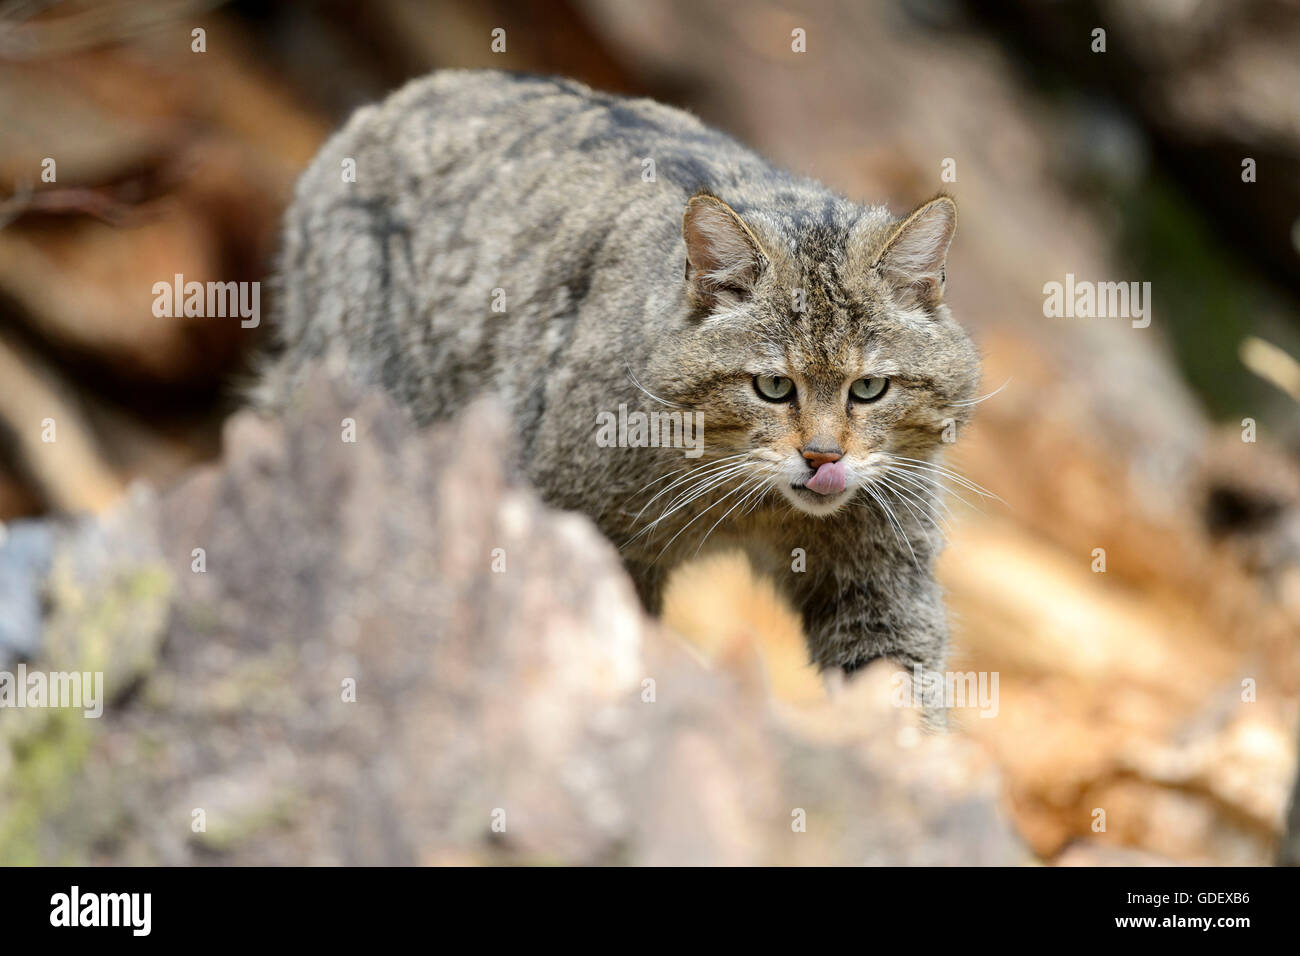 Comune gatto selvatico, il Parco Nazionale della Foresta Bavarese, Baviera, Germania, Felis silvestris Foto Stock